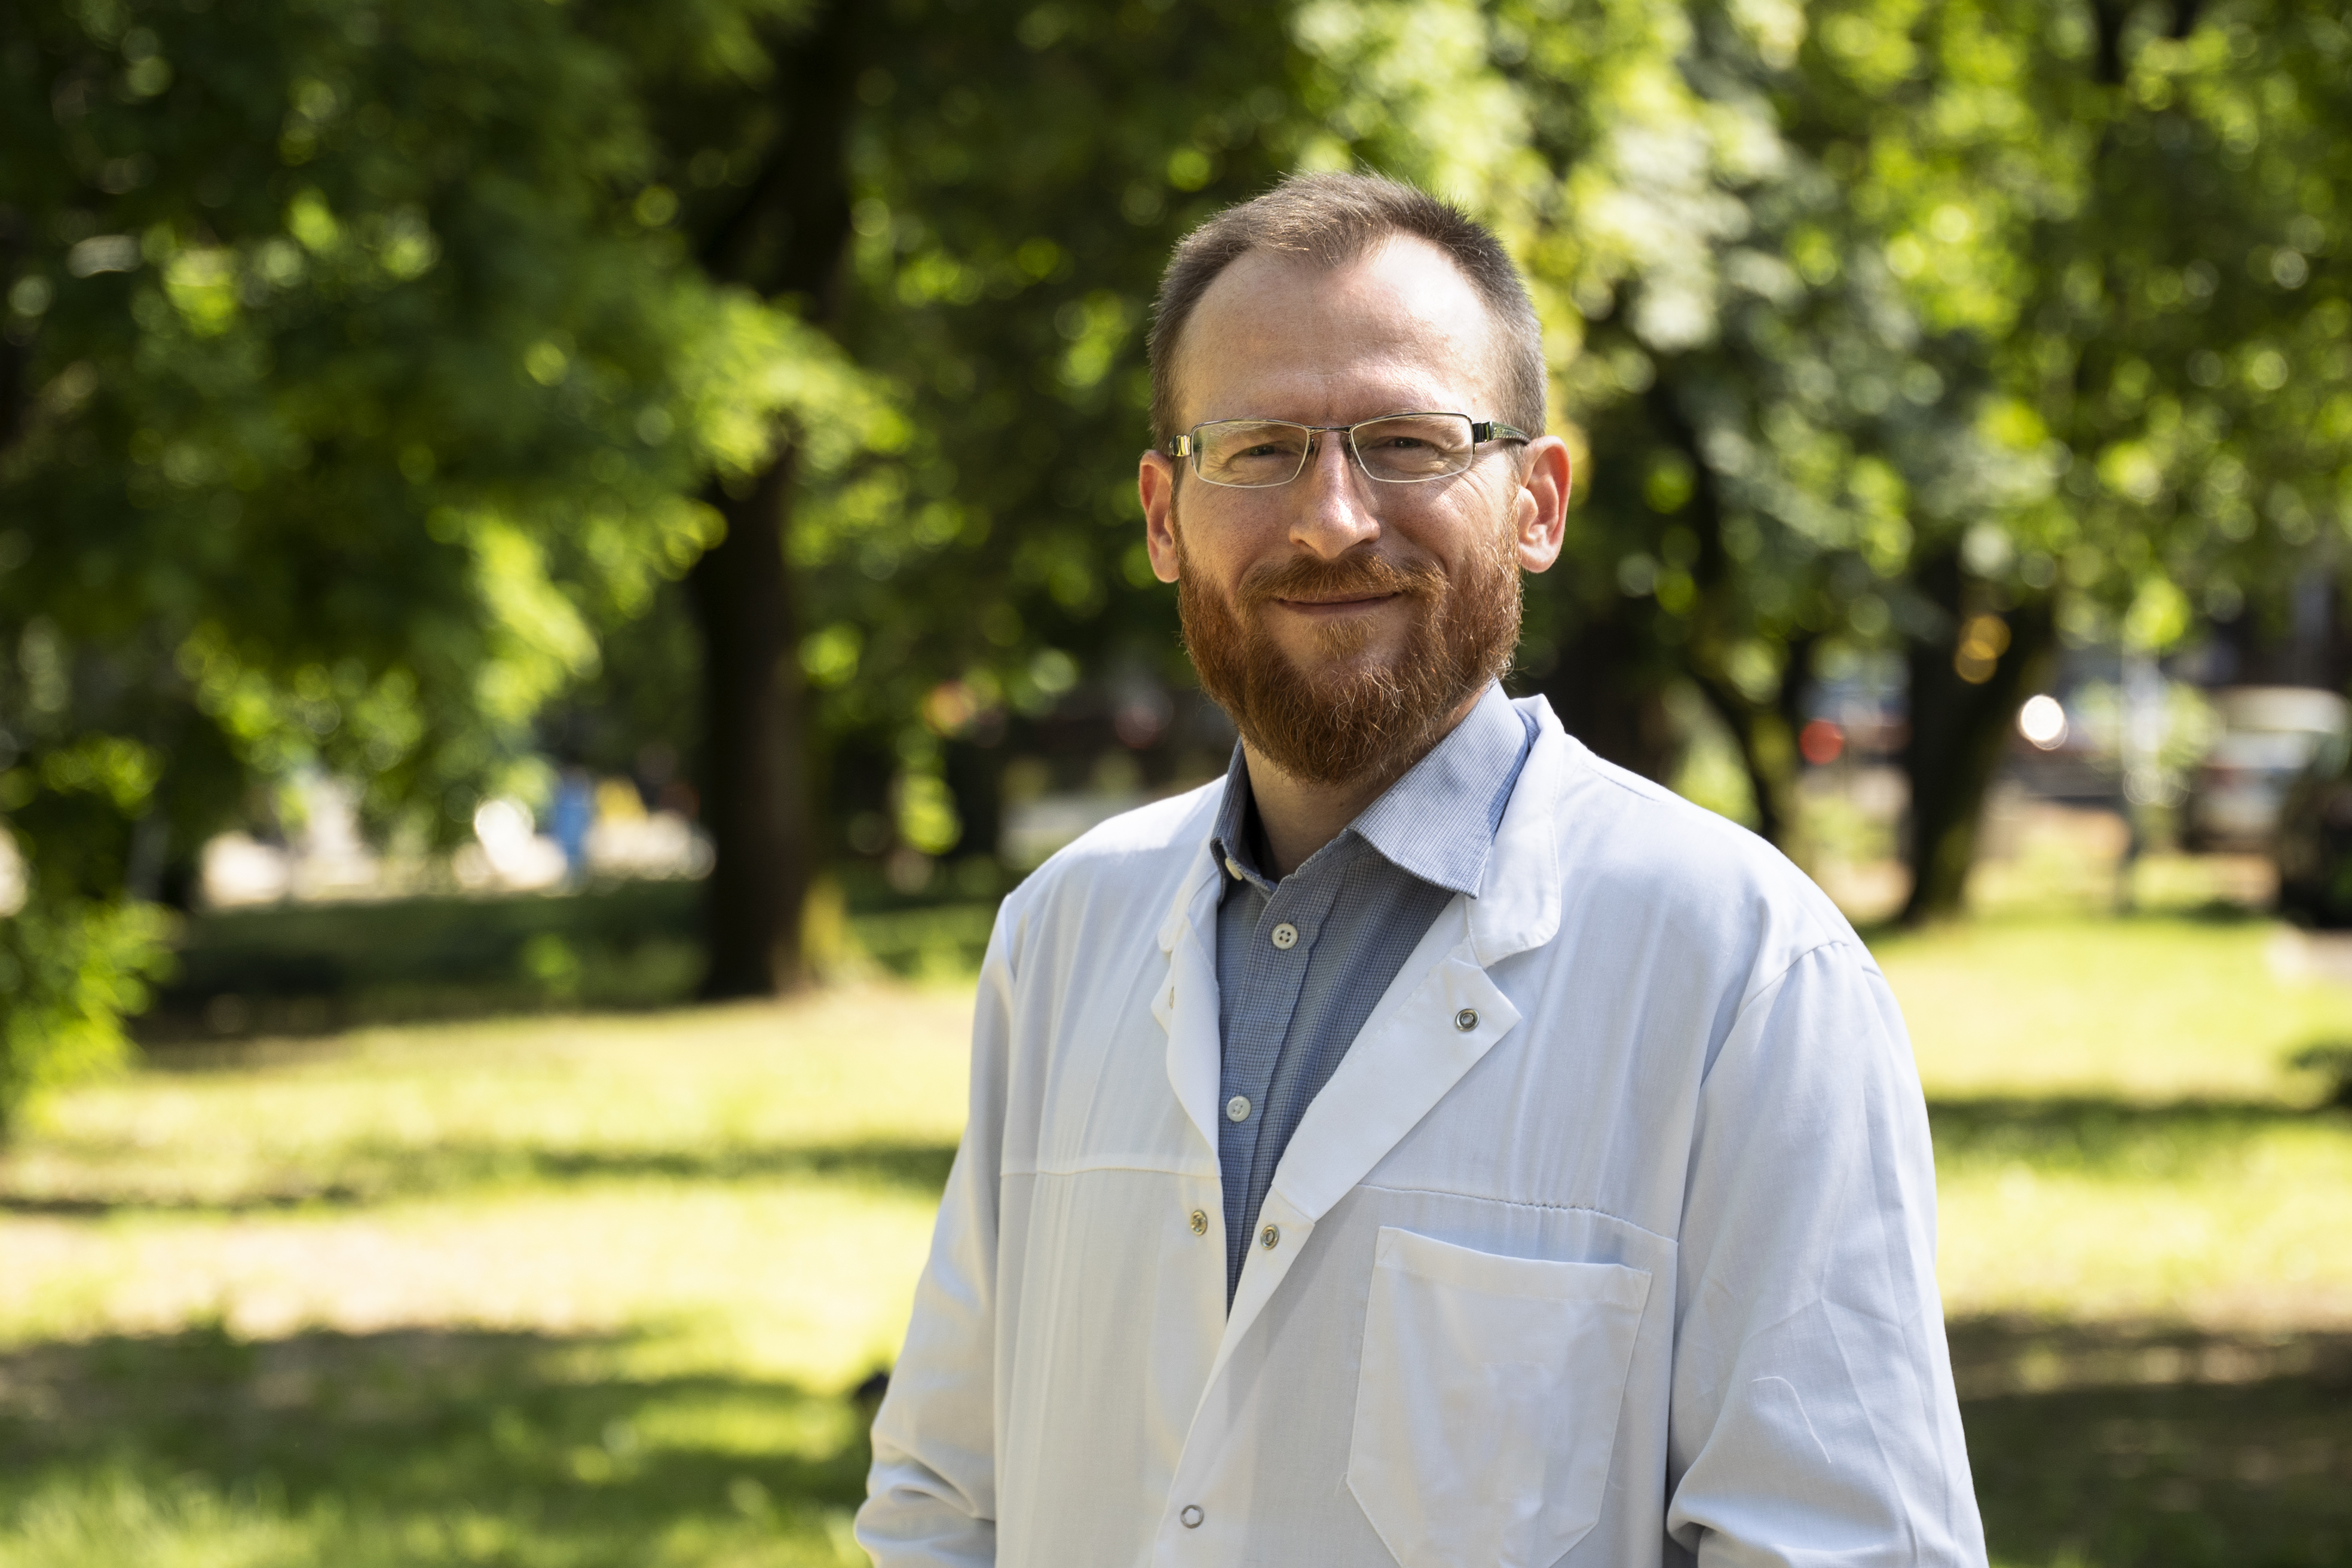 Sugárterápiáról empatikusan - Interjú Dr. Jánváry Zsolt Levente sugárterápiás onkológussal